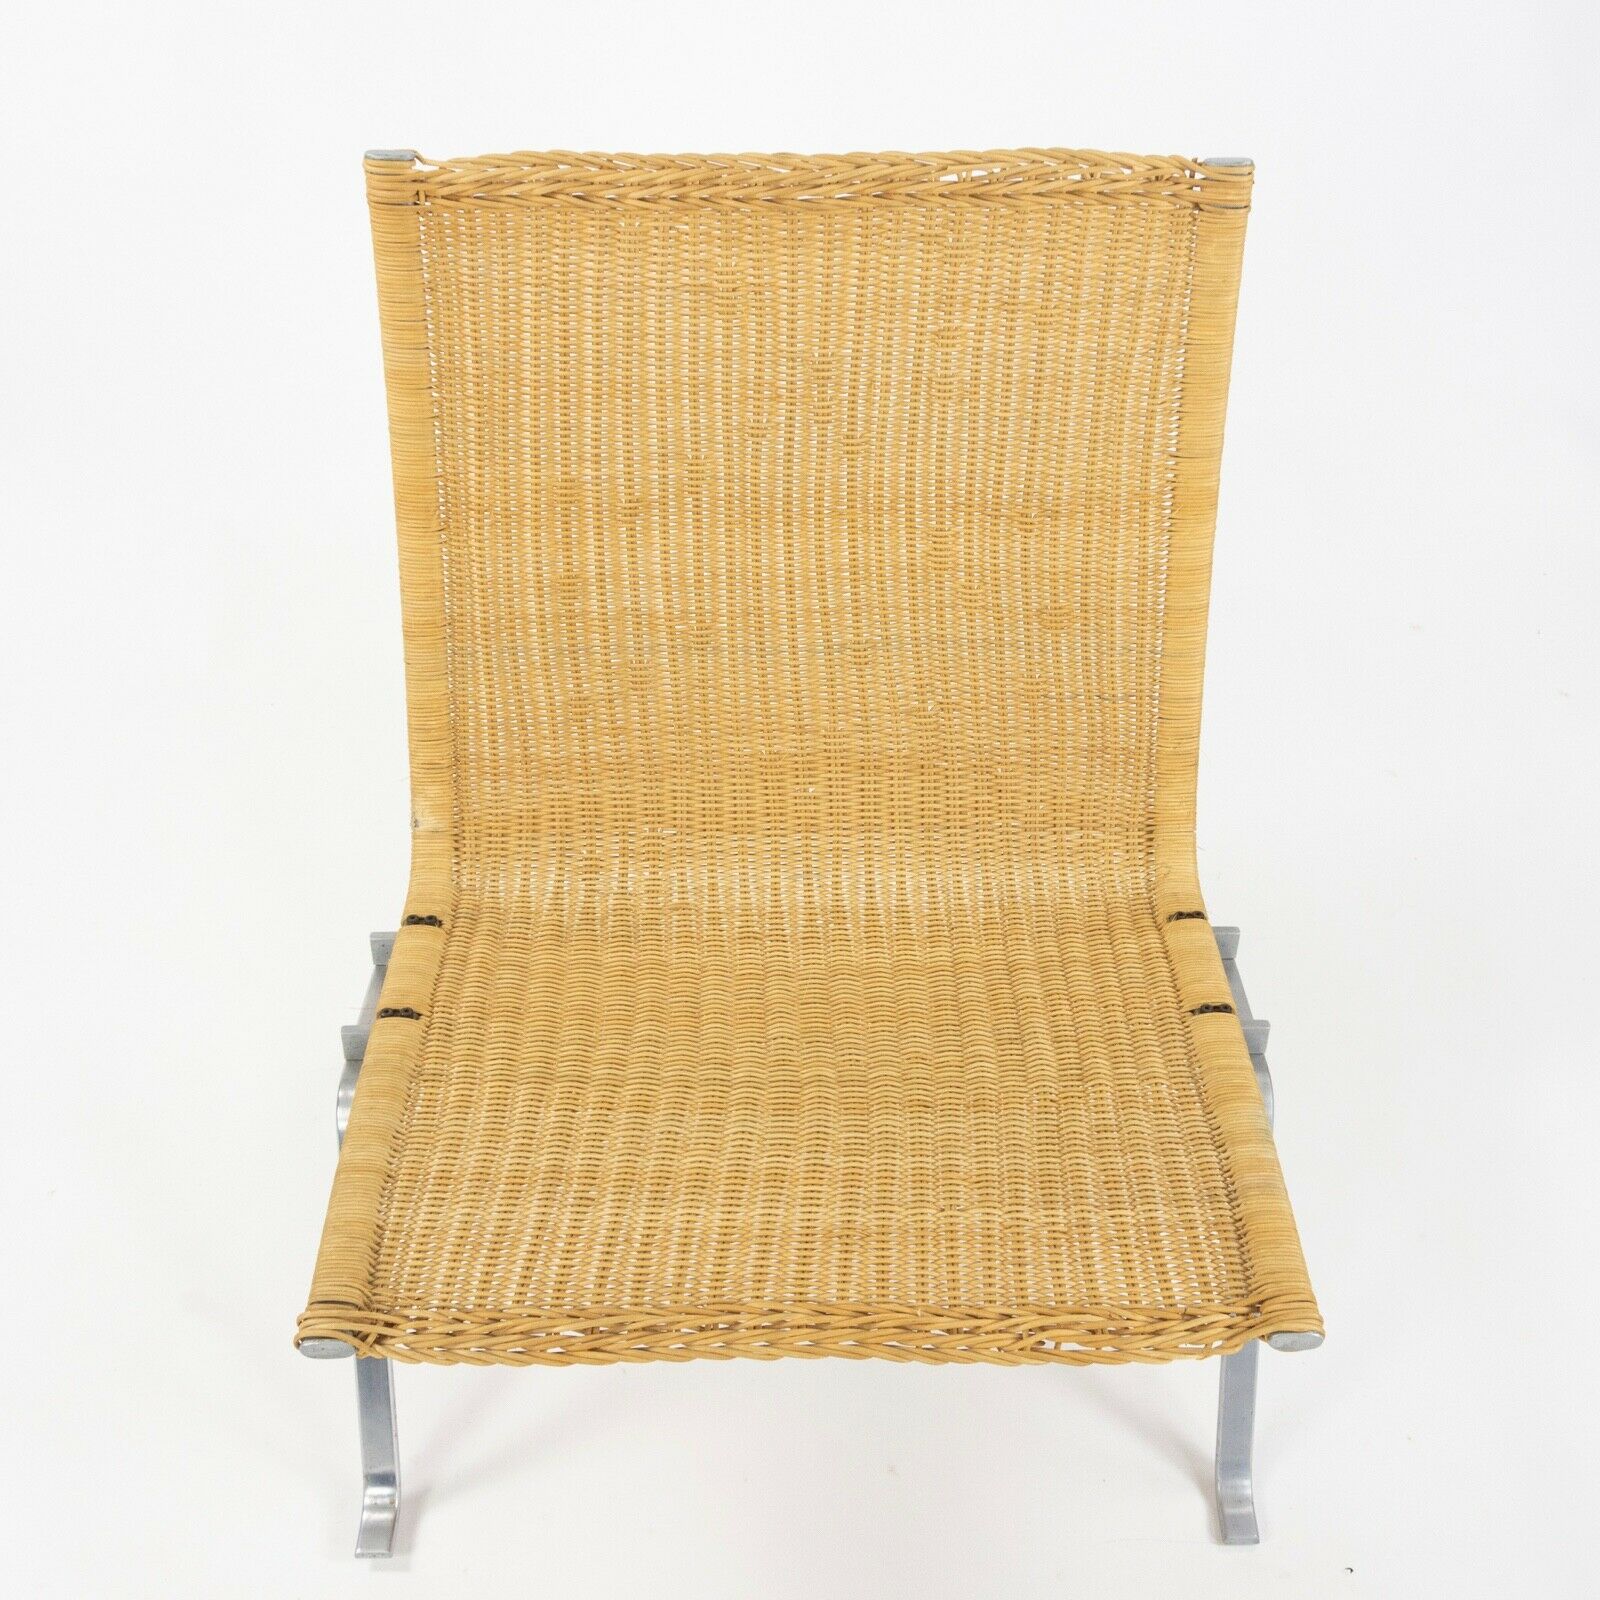 Poul Kjaerholm for E Kold Christensen Denmark PK22 Lounge Chair Original Wicker